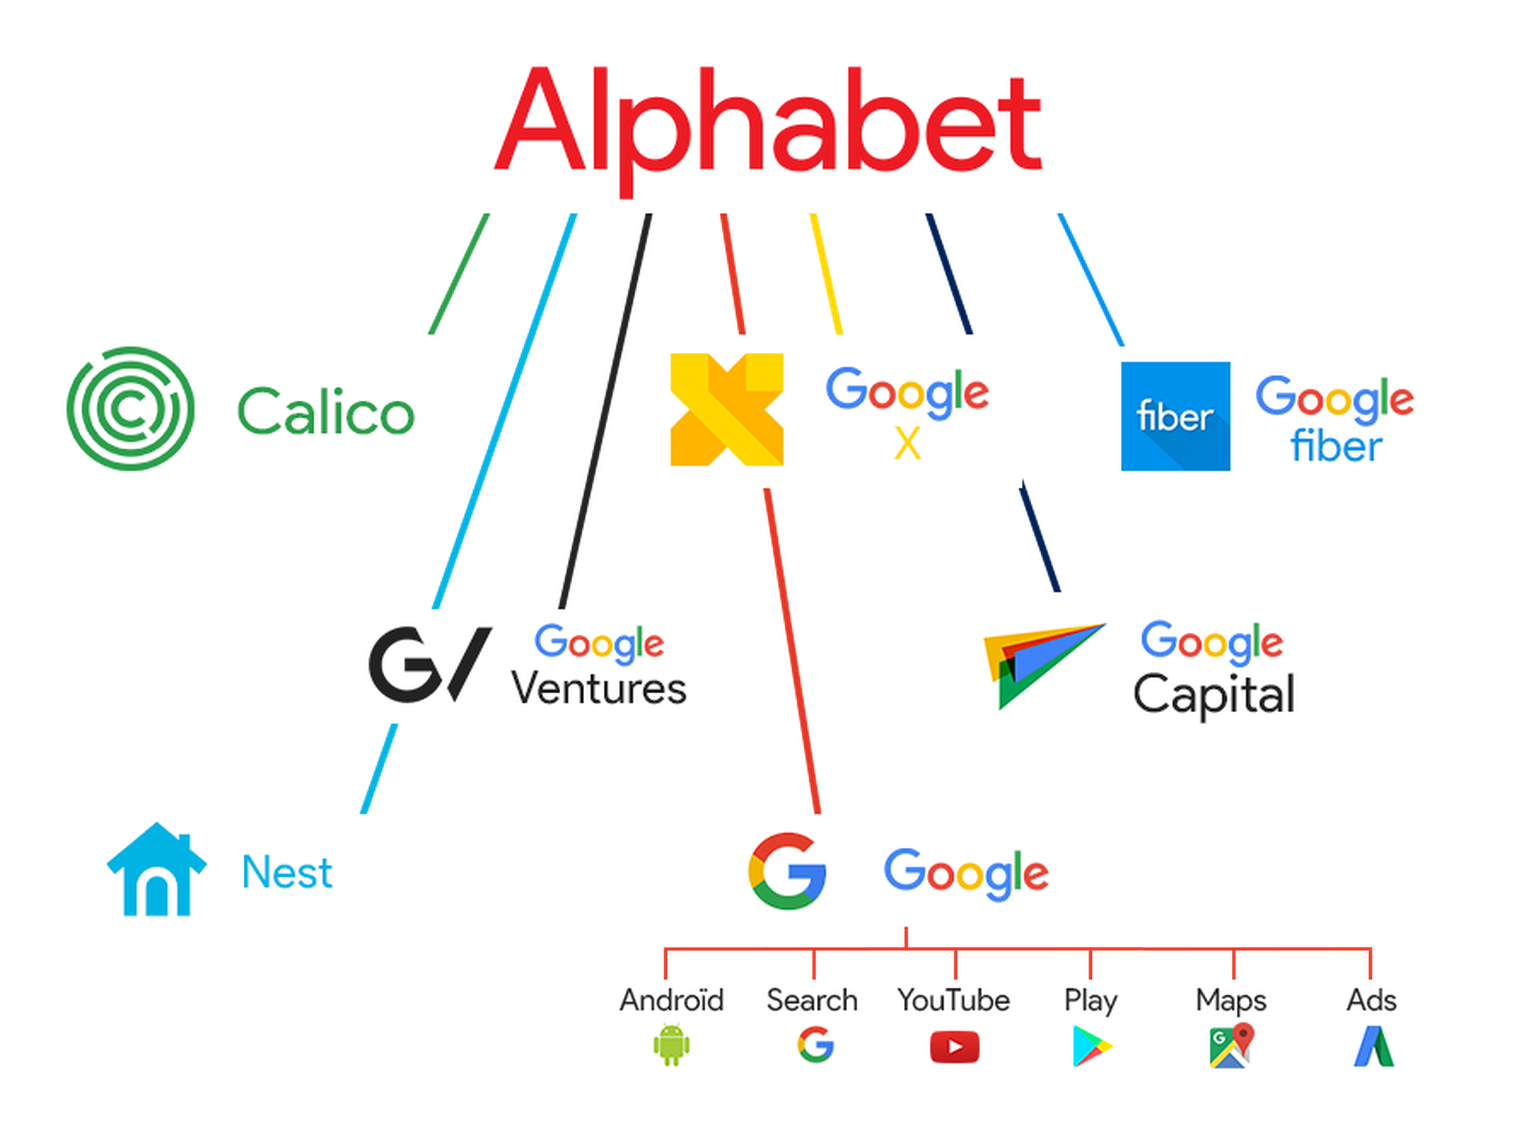 Firmenstruktur der Alphabet Inc. im Jahr 2017: Android, Ads (Werbung), Search (Suche), YouTube etc. gehören zu Google. Google selbst ist eine Tochter von Alphabet.